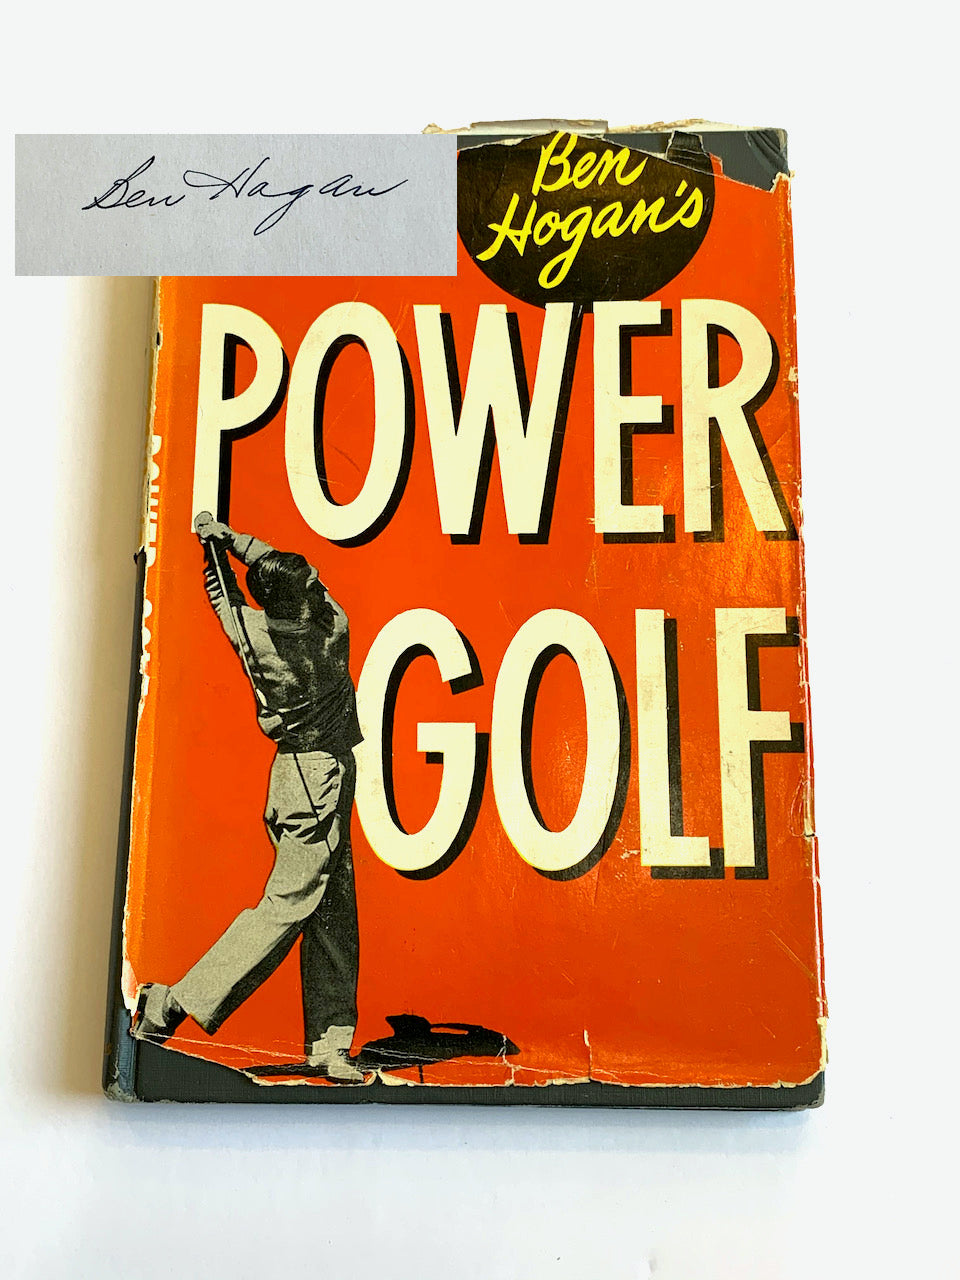 Power Golf by Ben Hogan - Signed by Ben Hogan